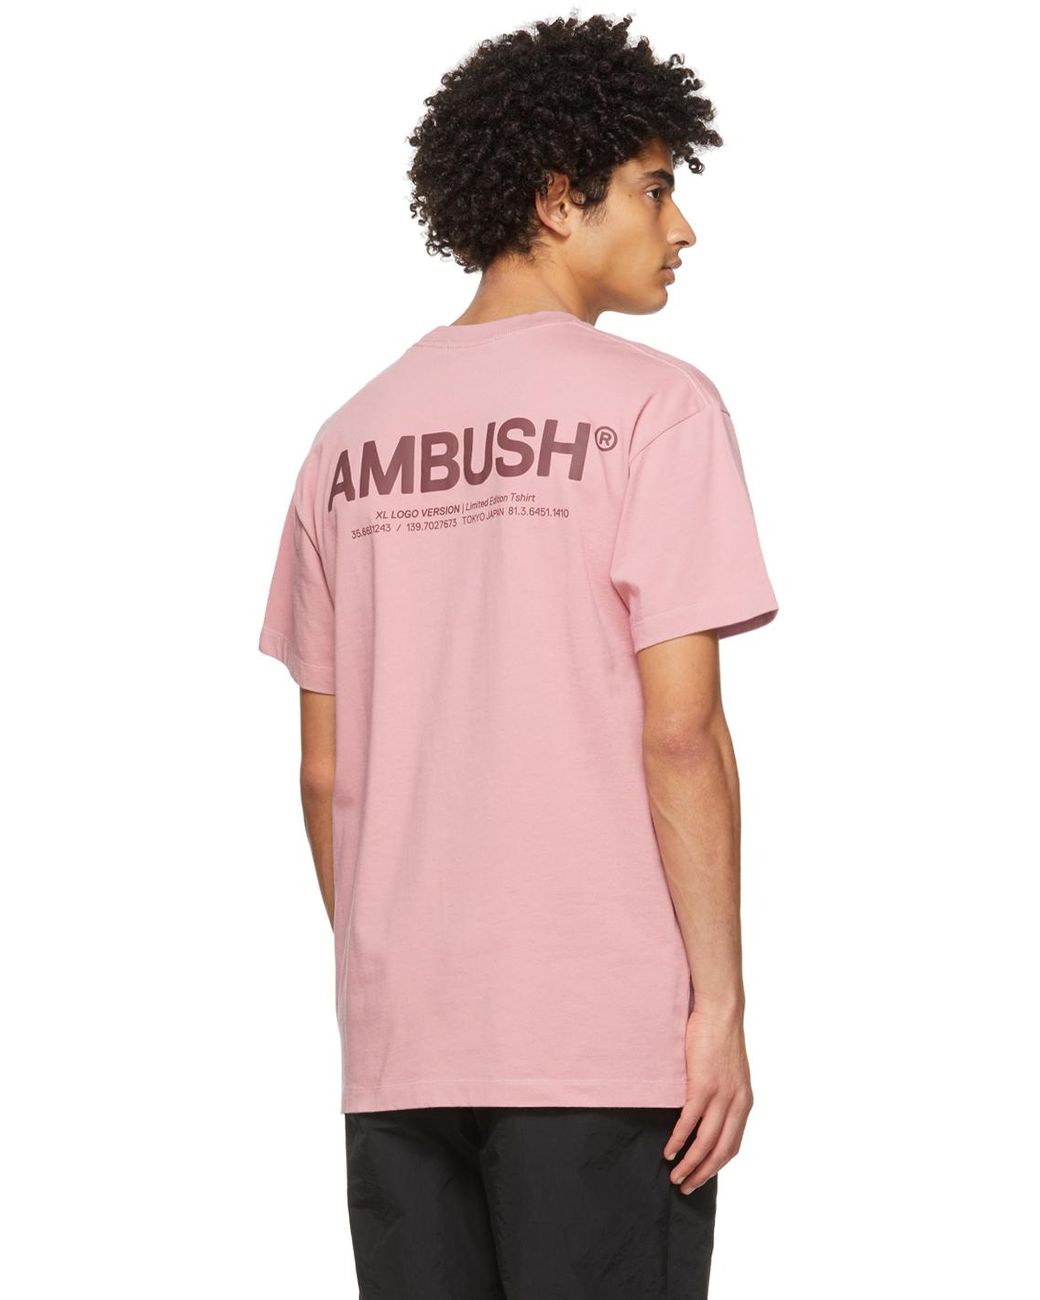 Ambush The Kingdom T-Shirt